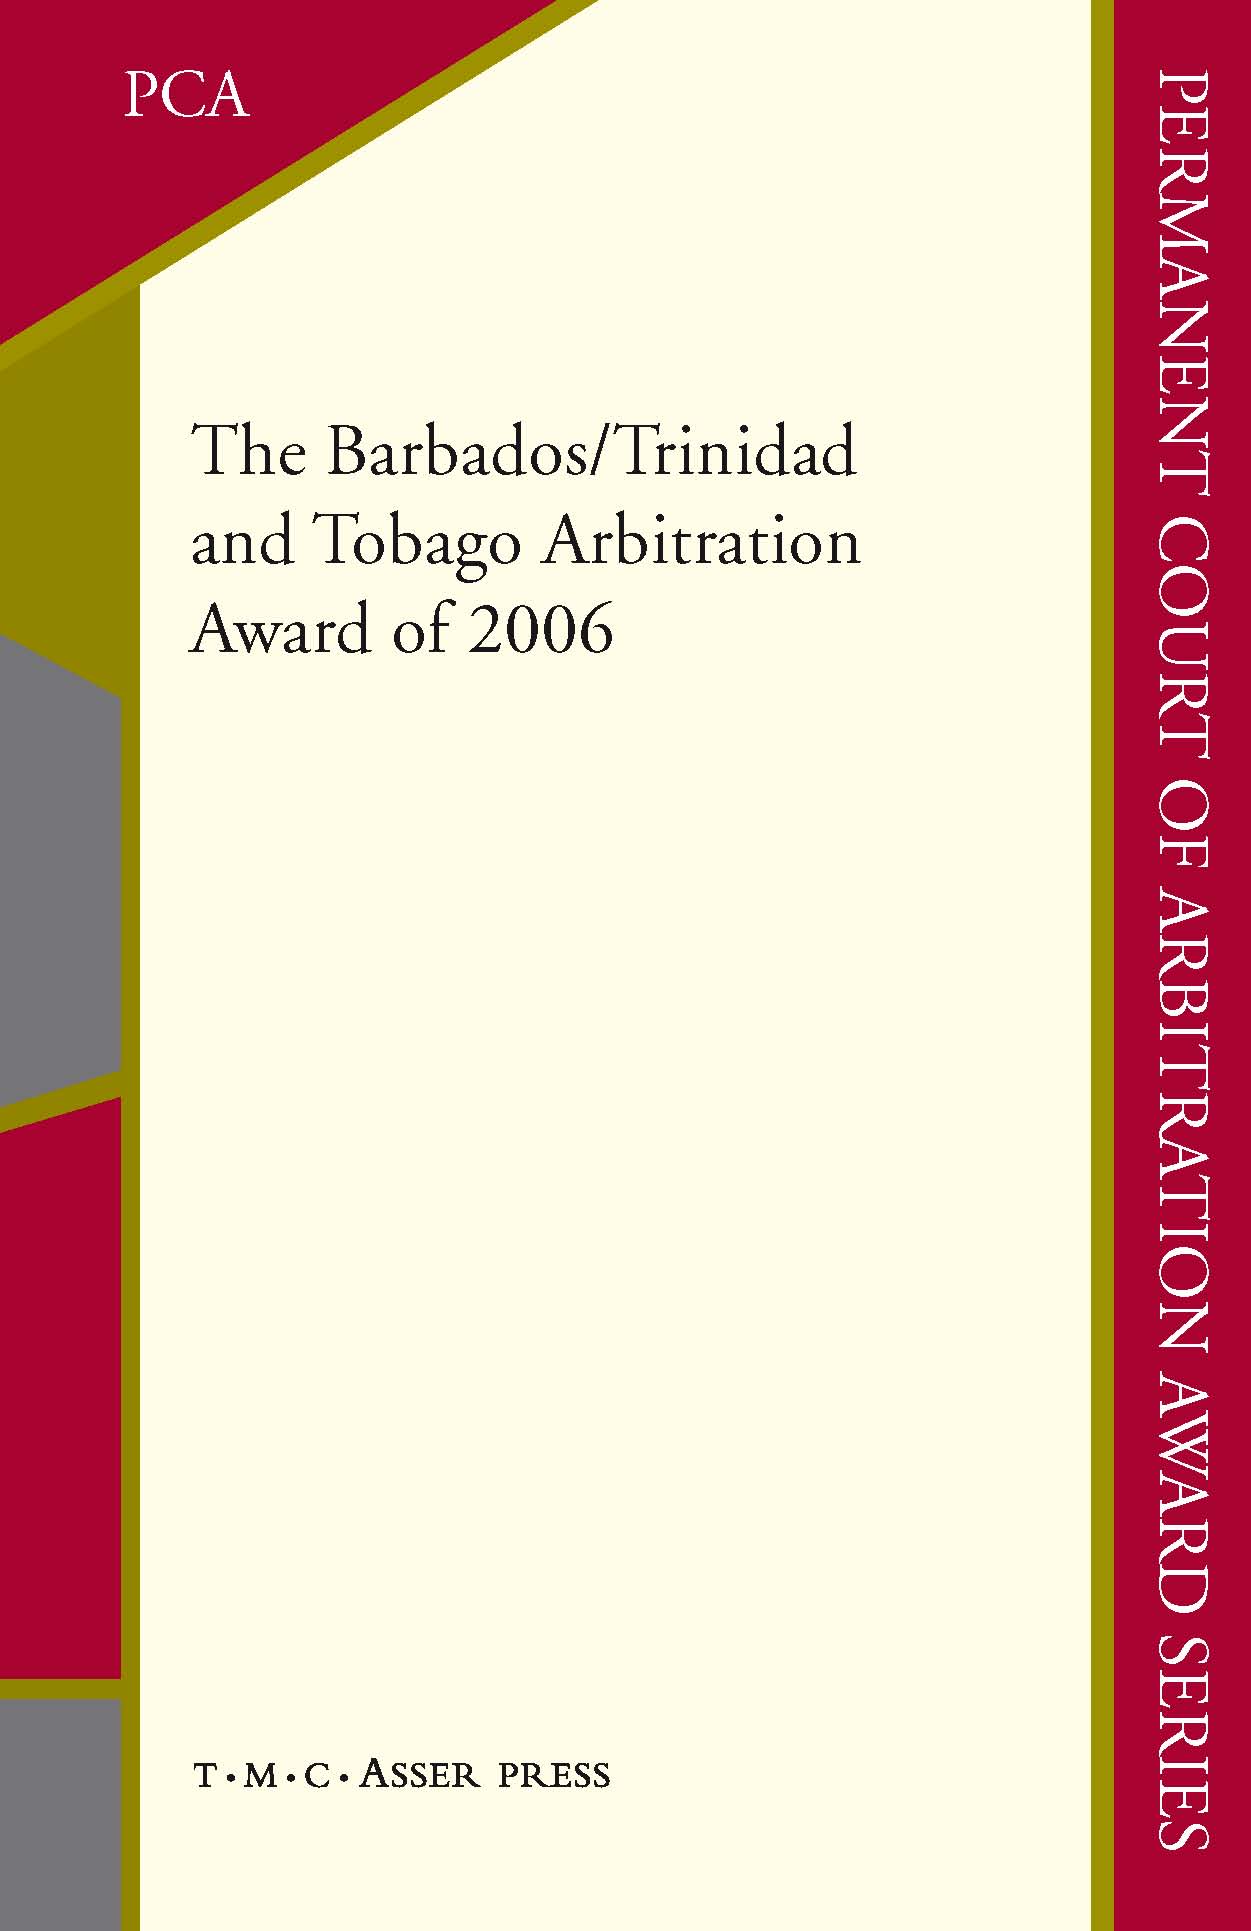 The Barbados/Trinidad and Tobago Arbitration Award of 2006